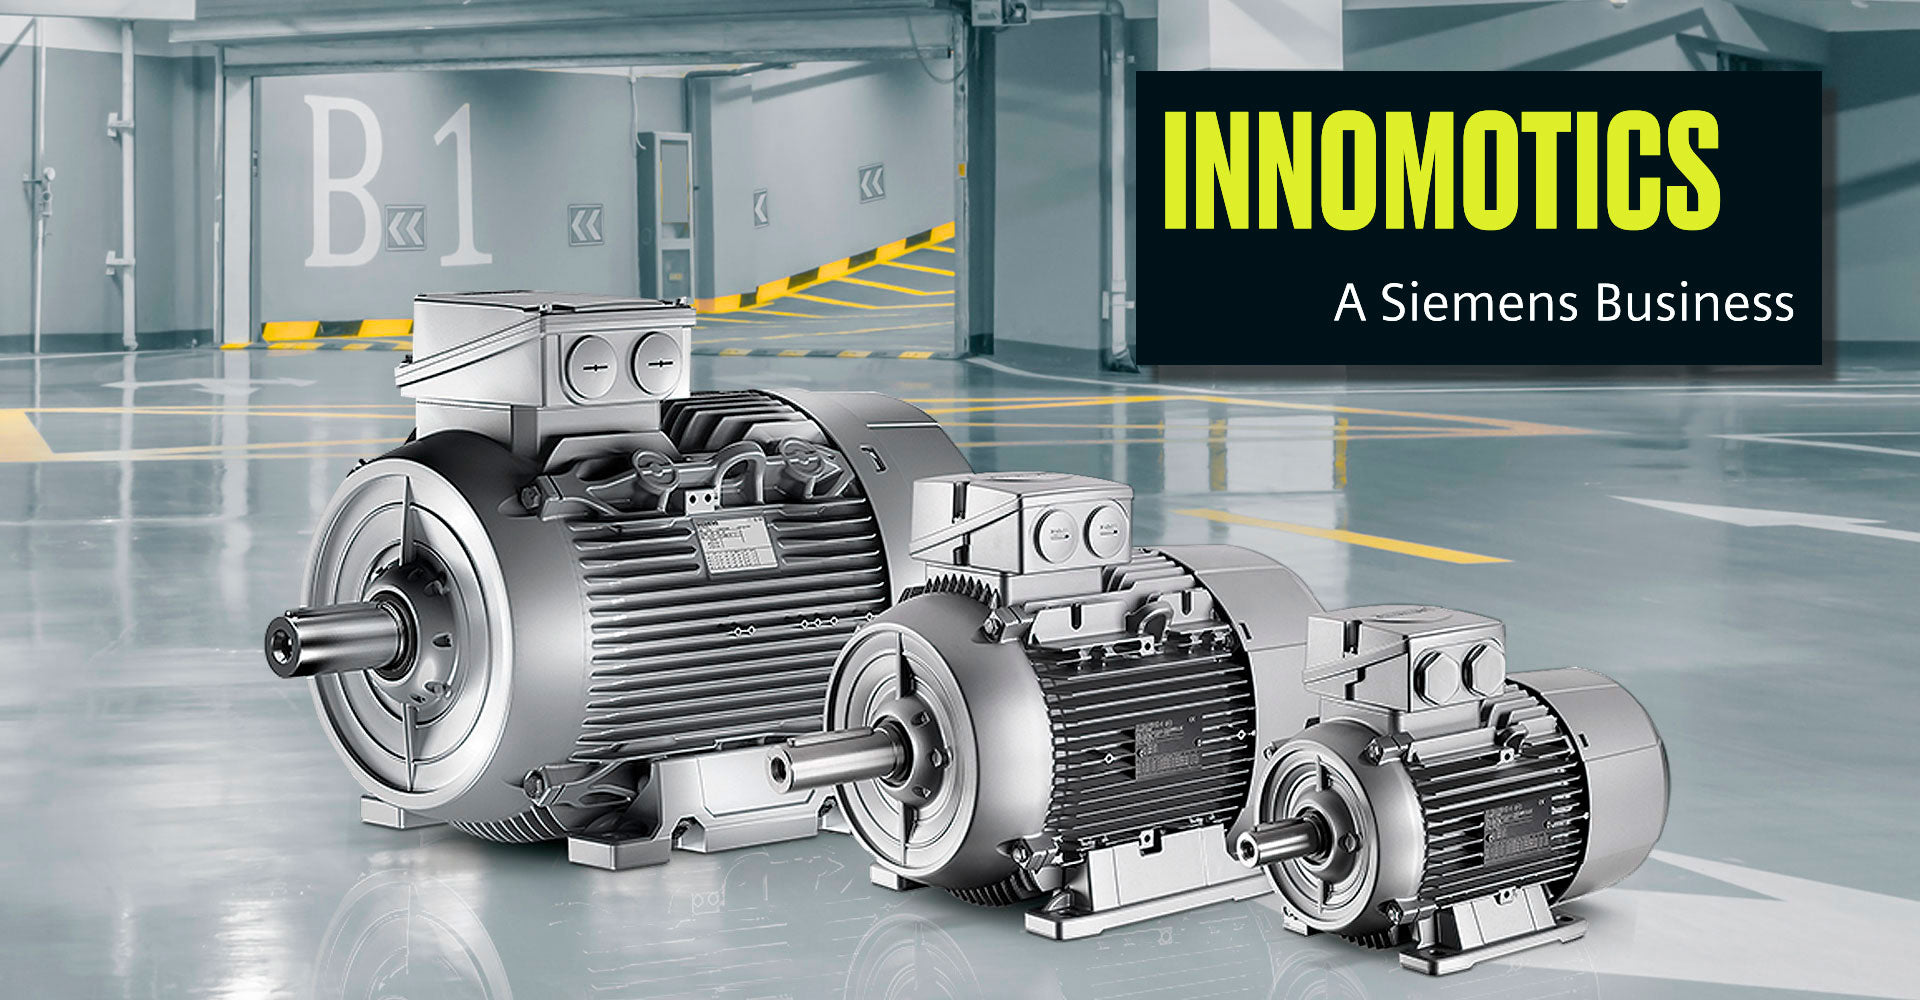 Siemens cambia su marca de Motores y Reductores a Innomotics con las mismas prestaciones y calidad